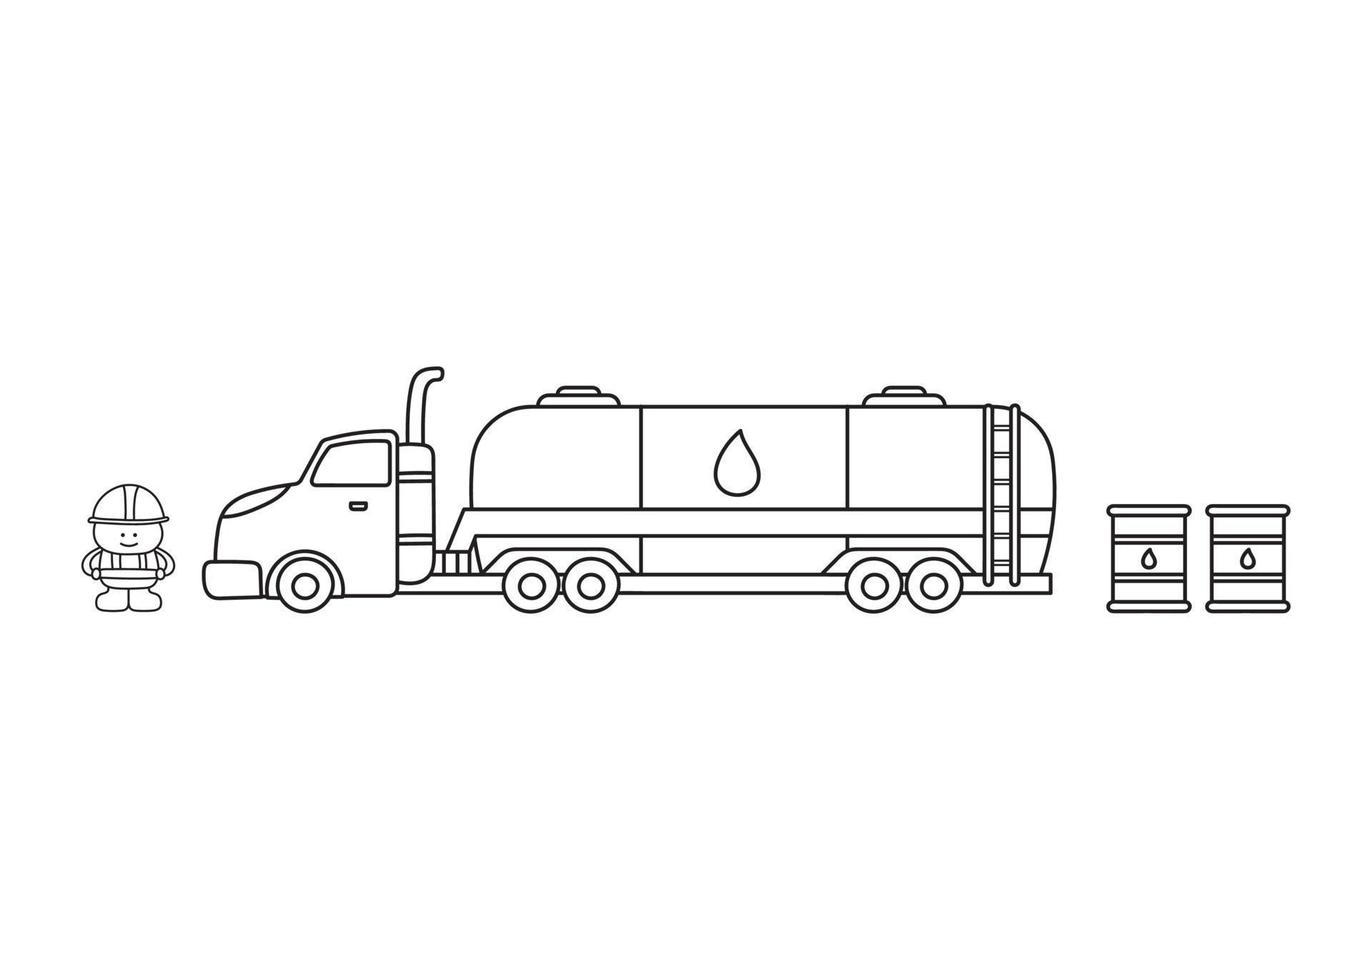 conjunto de construção de crianças coloridas desenhadas à mão caminhão de combustível com barris de combustível e trabalhador da construção civil vetor